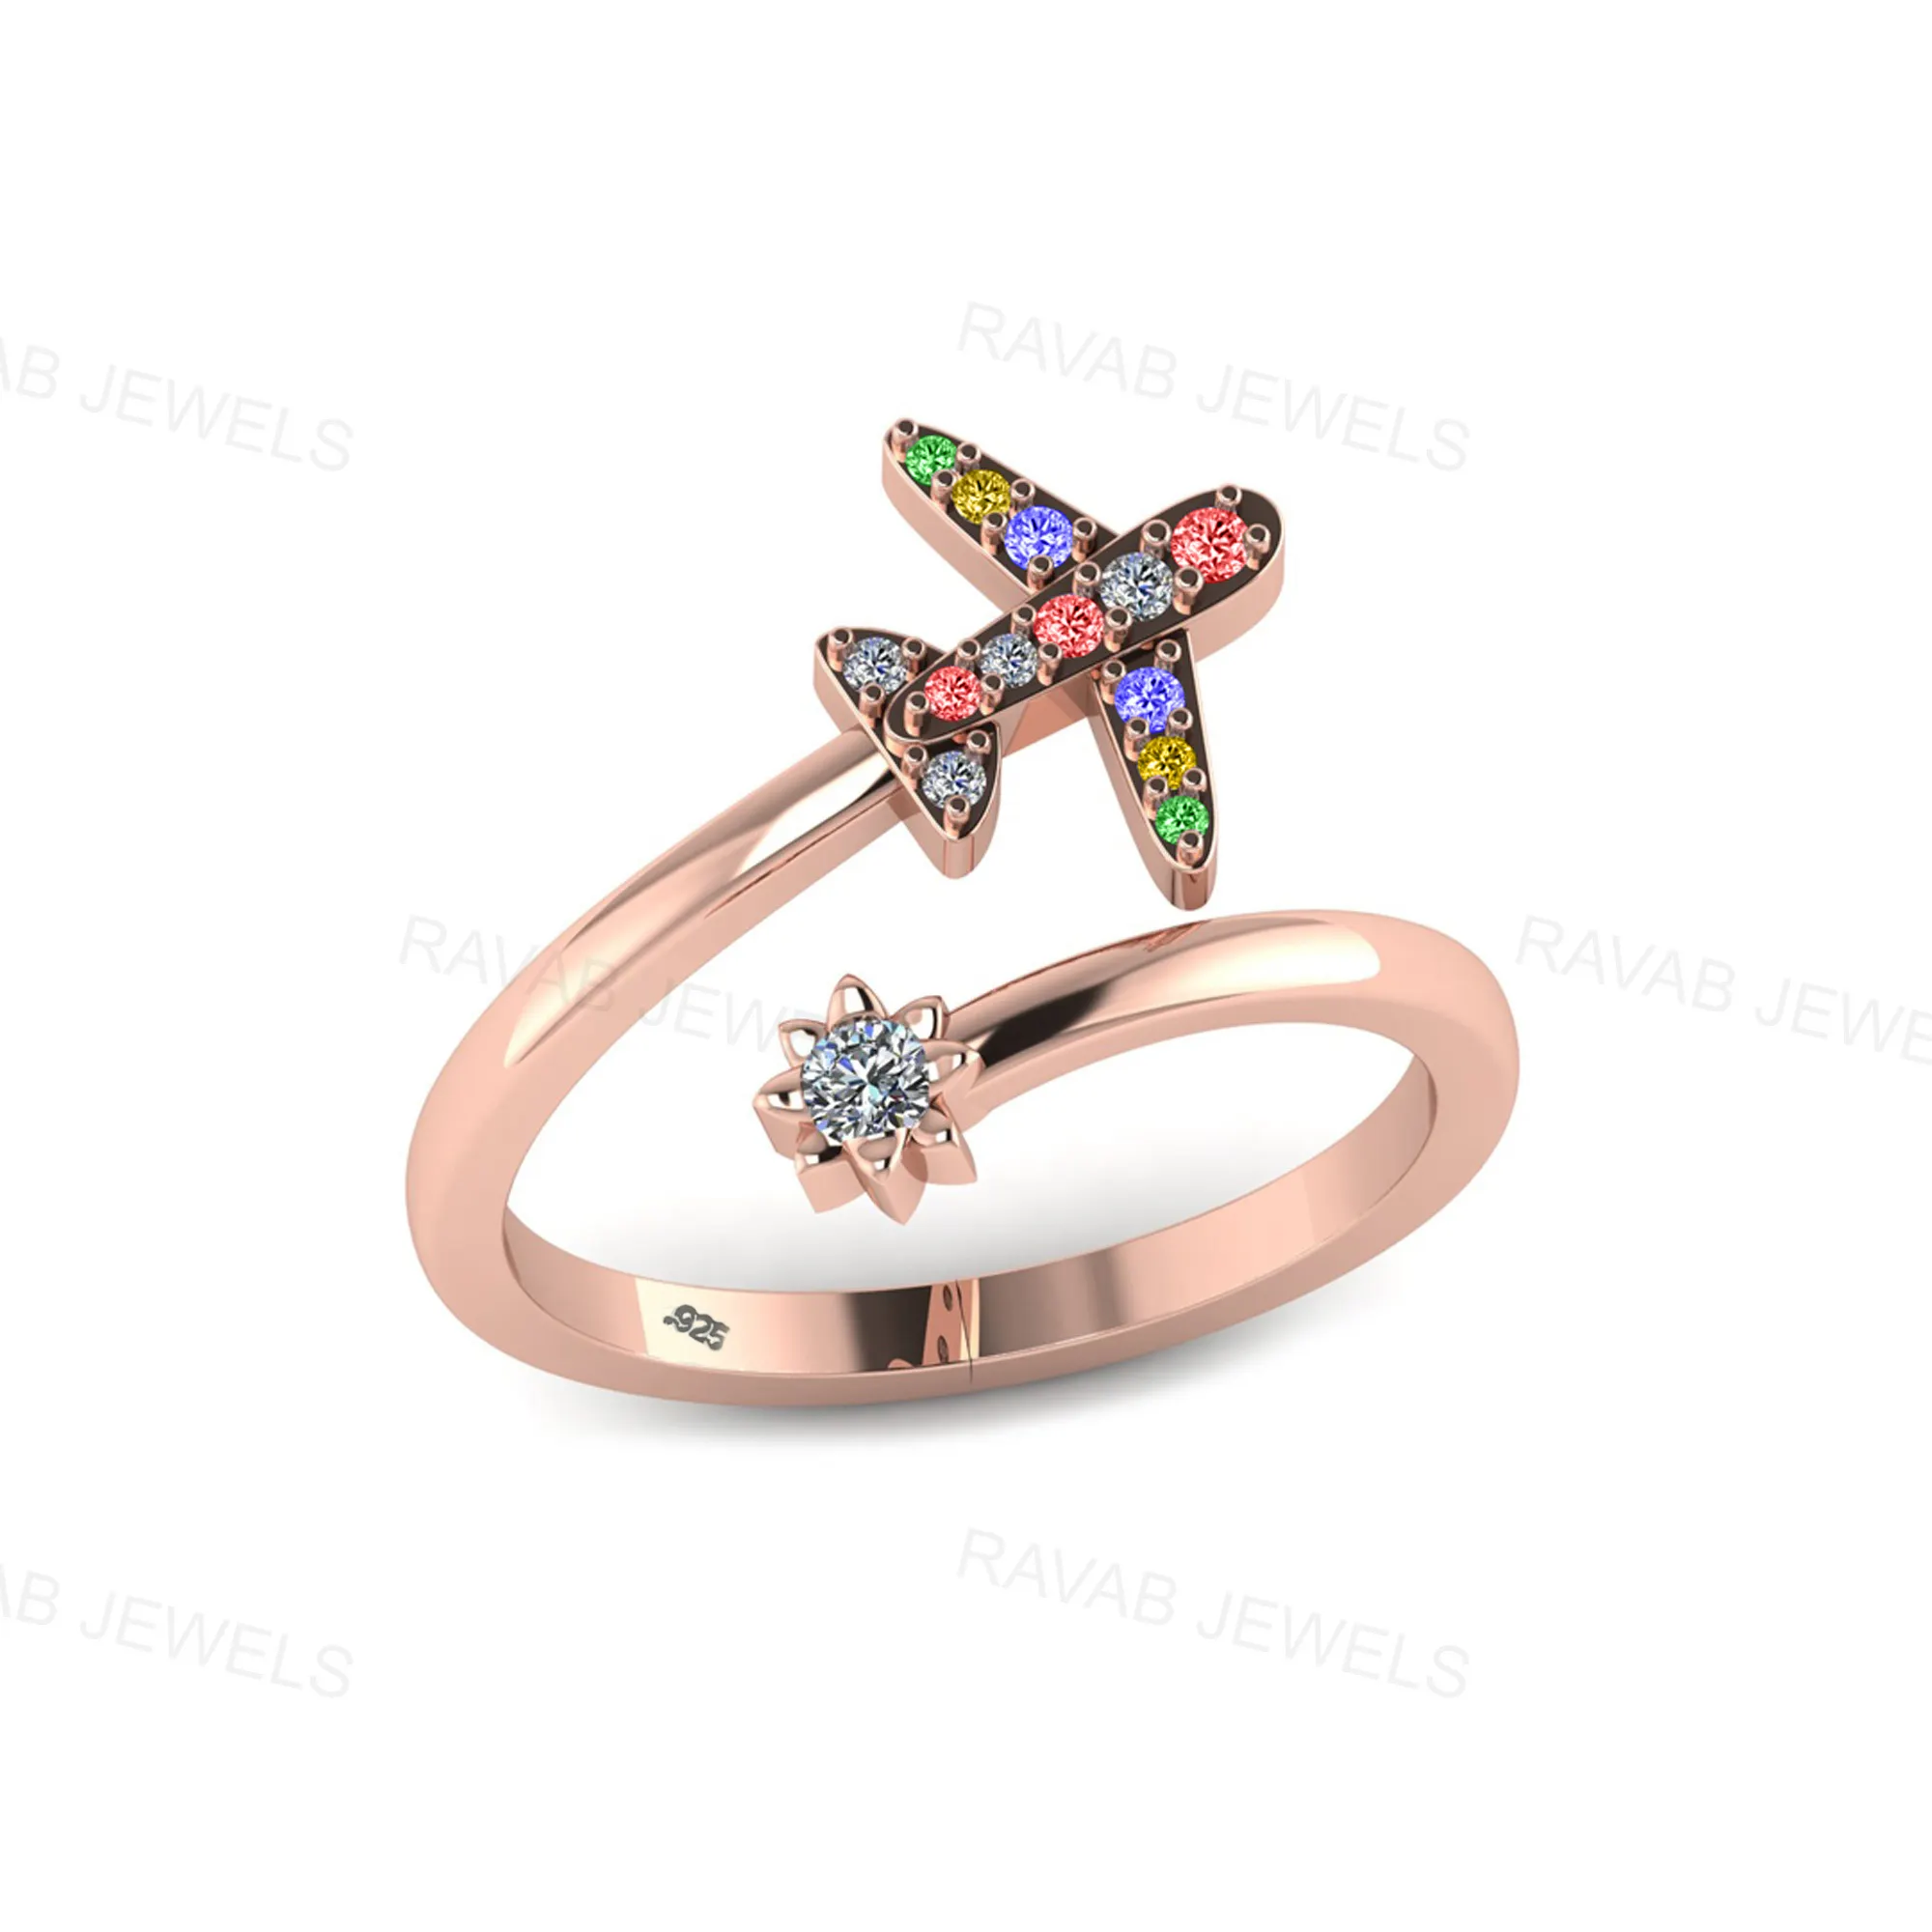 Hochwertiger Großhandel Zirkon Farbiger Schmuck Indien Silber einstellbar Flugzeug Finger Werkspreis Schmuck Ring für Hochzeitsgeschenk